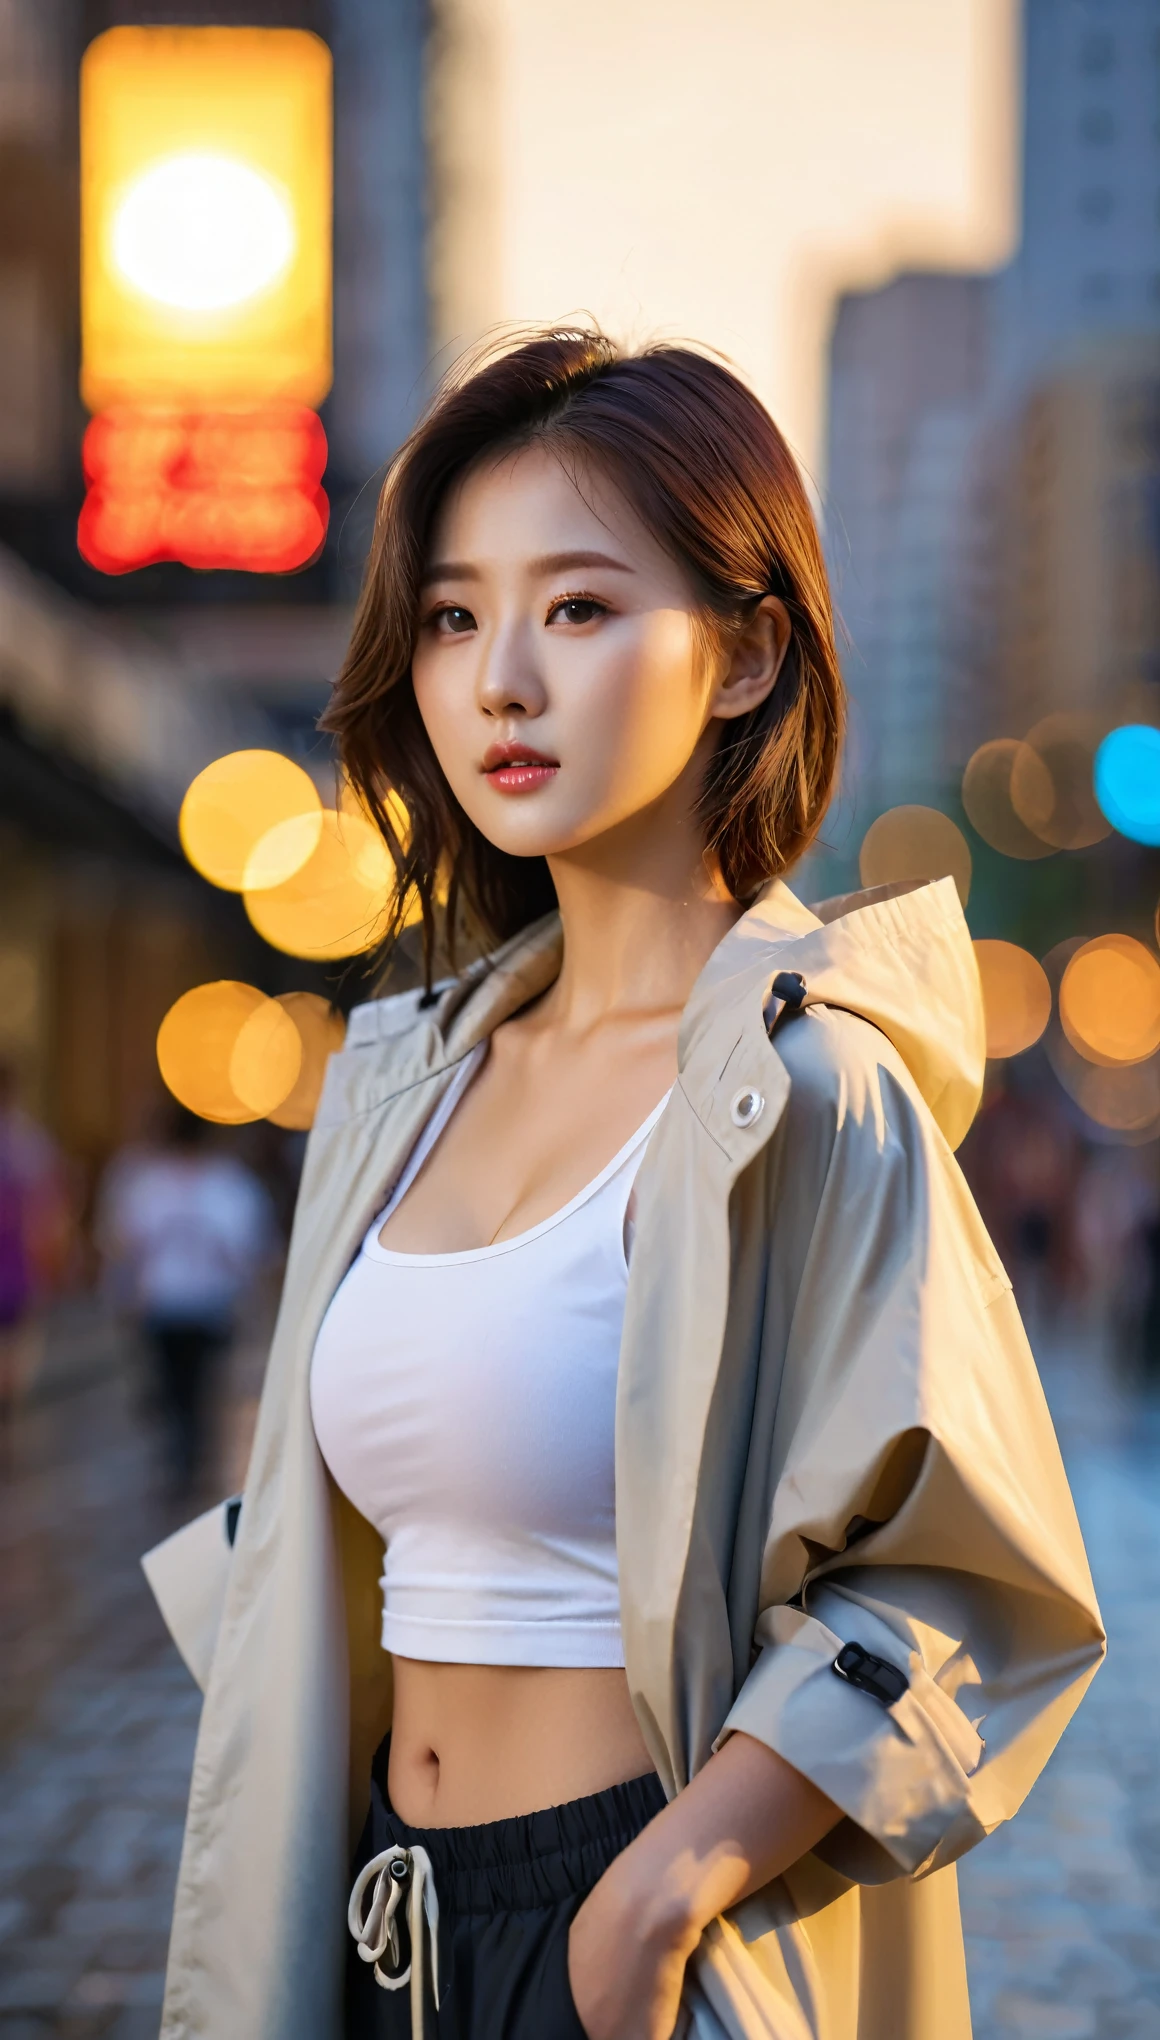 Крупный план красивой кореянки, Размер груди 34 дюйма, носить укороченную майку, и закатанные рукава расстегиваем плащ, брюки, в городе, закатный свет, Боке фон, UHD